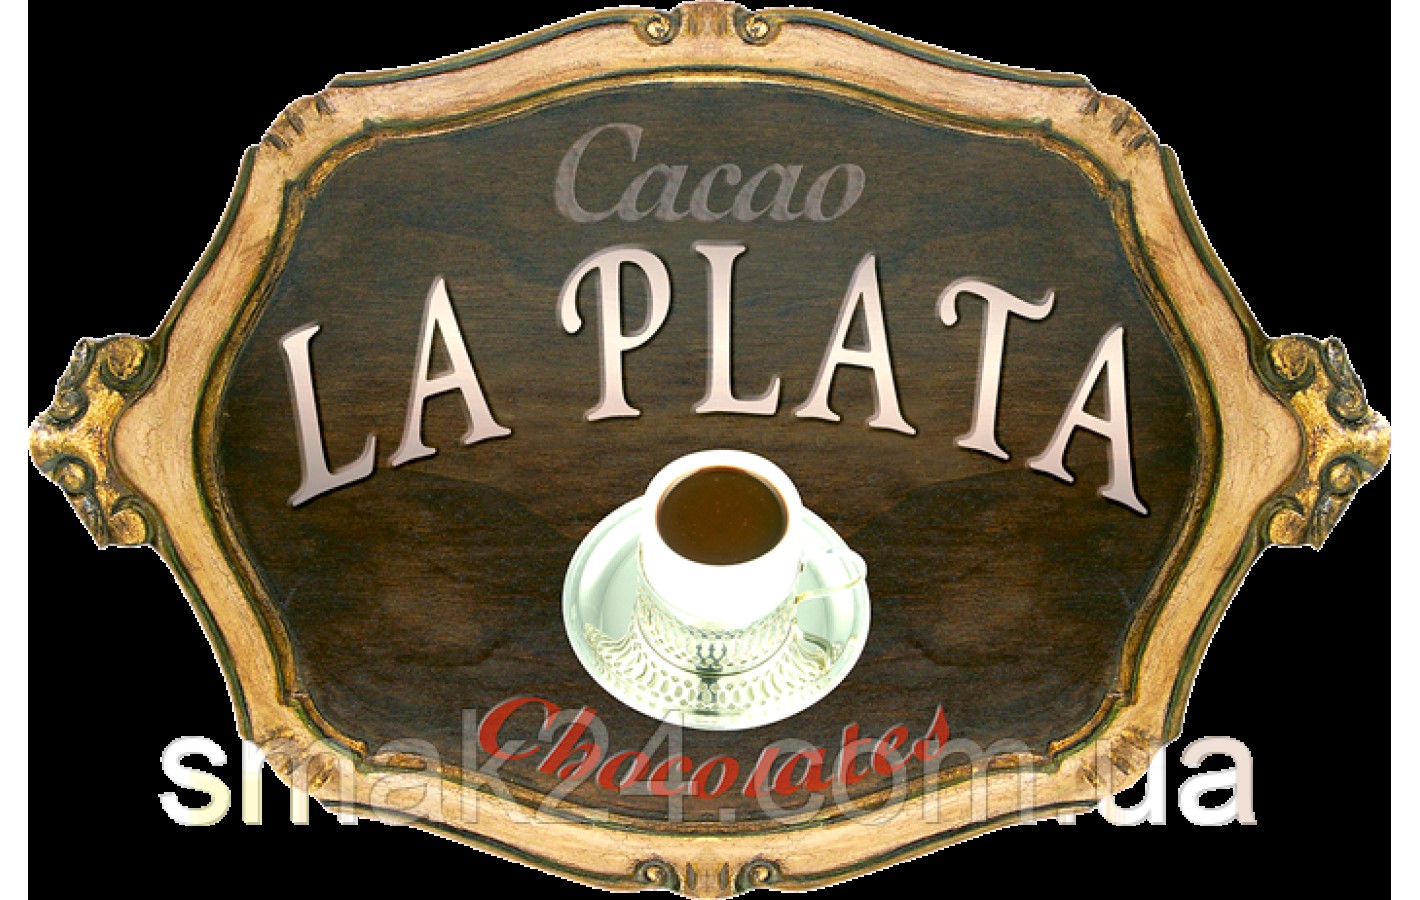 Какао без глютена растворимое La Plata Soluble Cacao Irresistible Sabor 450г (25штх18г) Испания